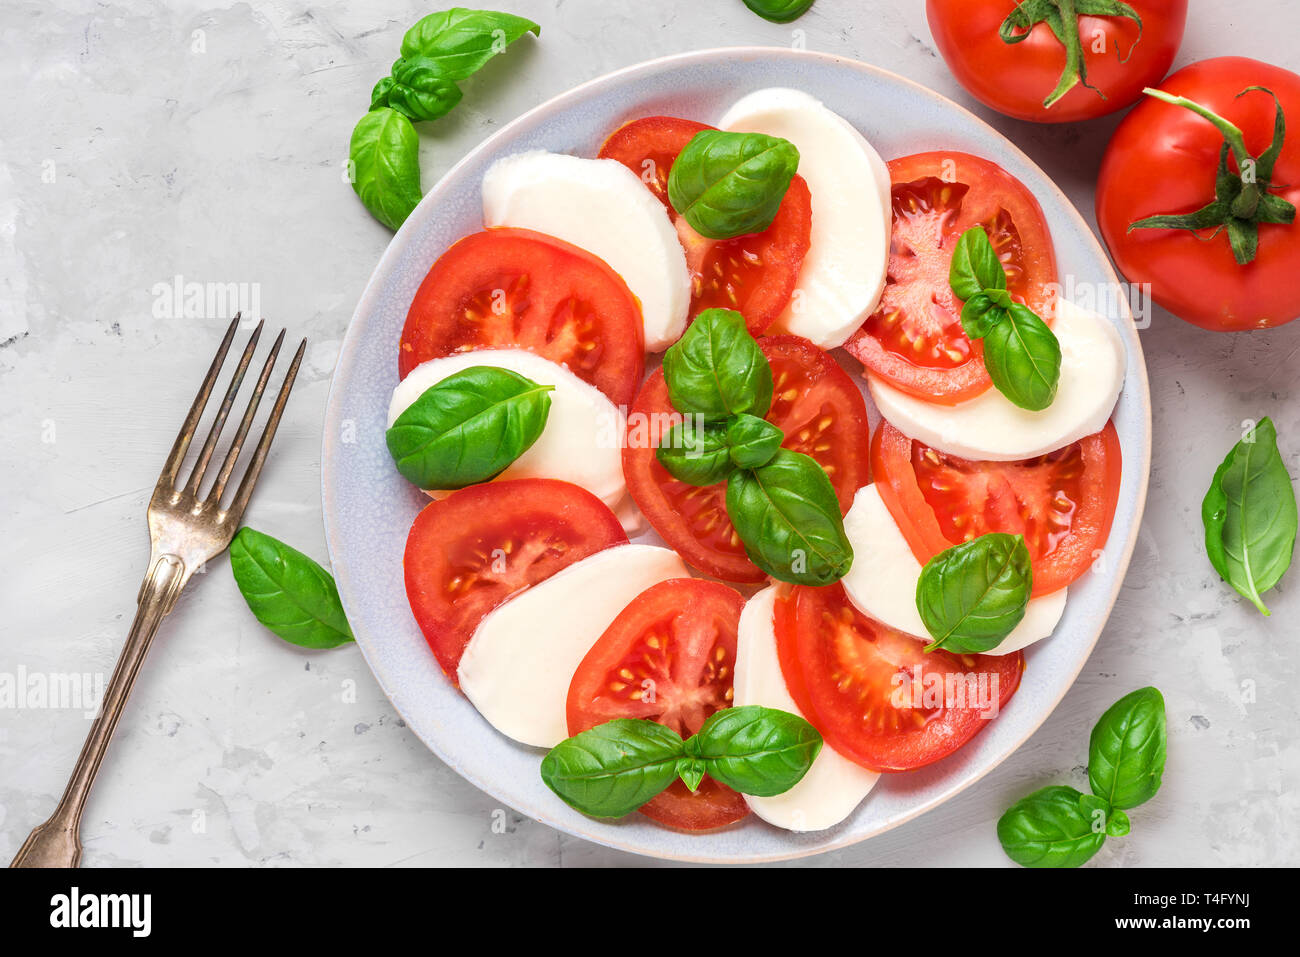 Salade caprese italien frais avec des tranches de tomate, mozzarella, basilic, huile d'olive et la fourchette dans une assiette sur fond de béton gris. Télévision. top v Banque D'Images